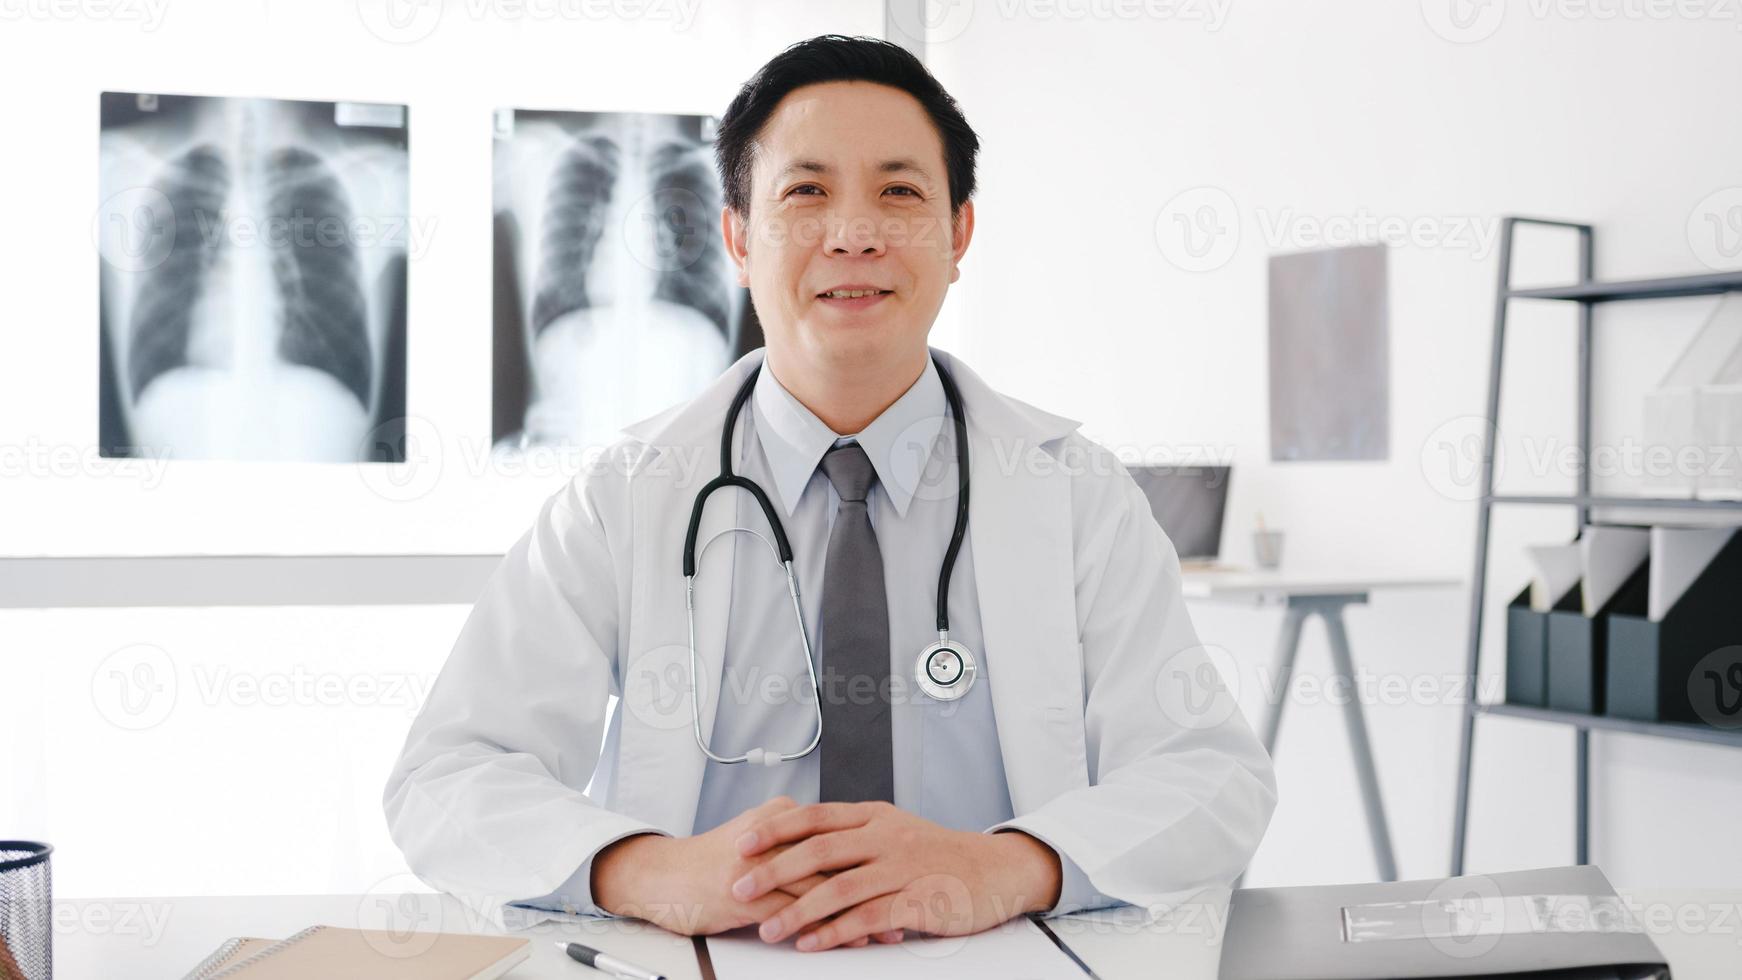 zelfverzekerde jonge Aziatische mannelijke arts in wit medisch uniform met een stethoscoop die naar de camera kijkt en glimlacht tijdens een videoconferentiegesprek met de patiënt in het gezondheidsziekenhuis. advies- en therapieconcept. foto